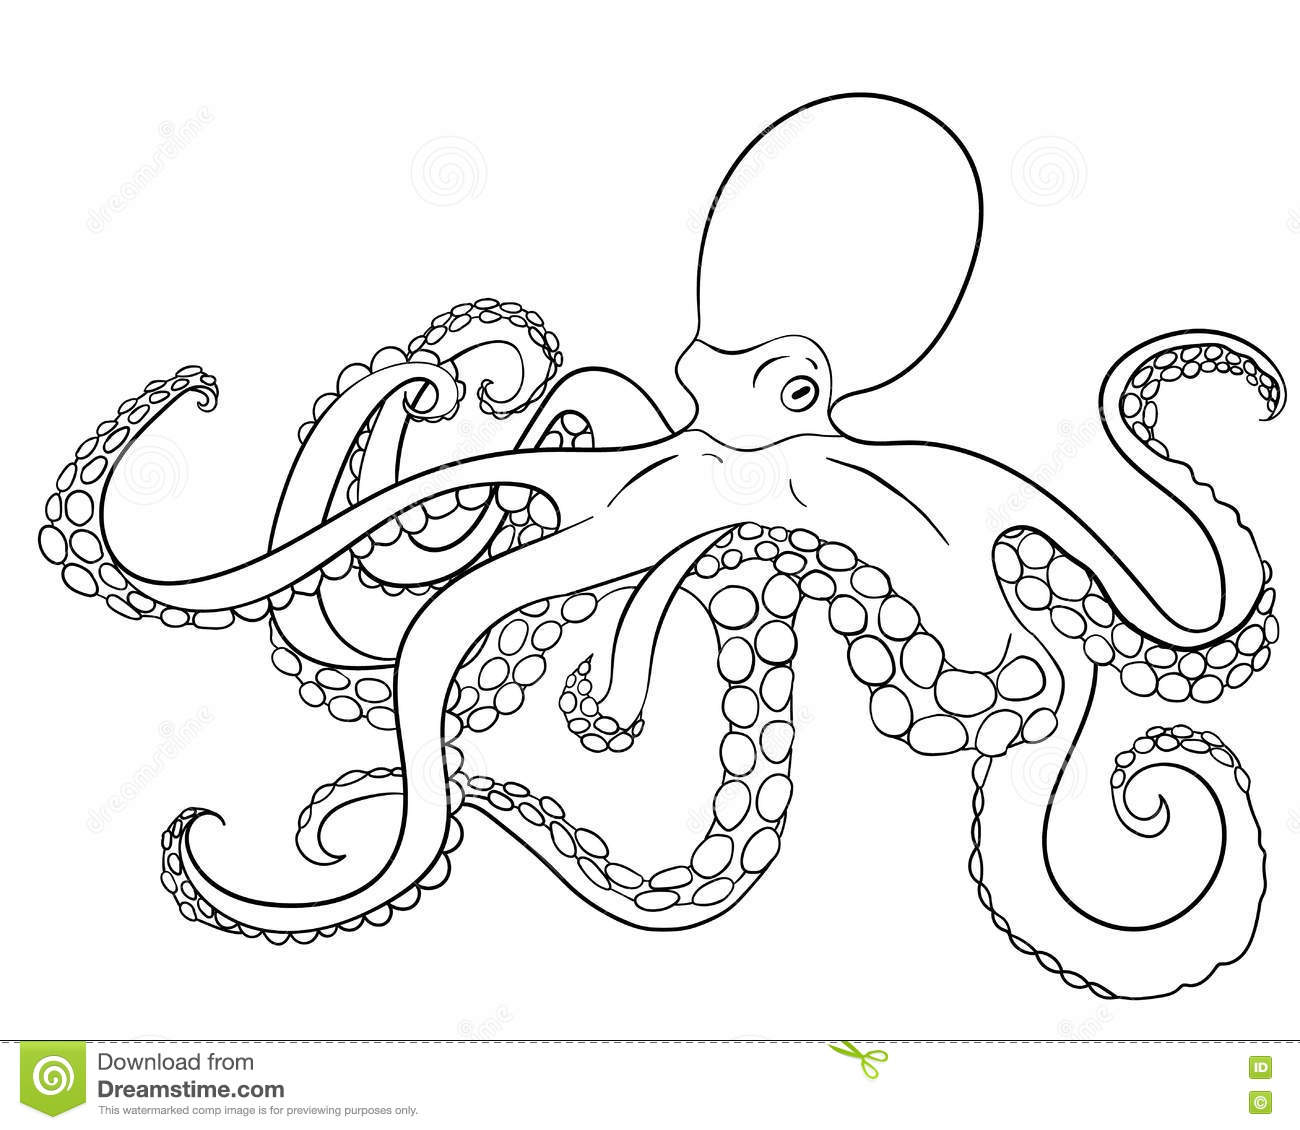 Mollusc coloring #13, Download drawings